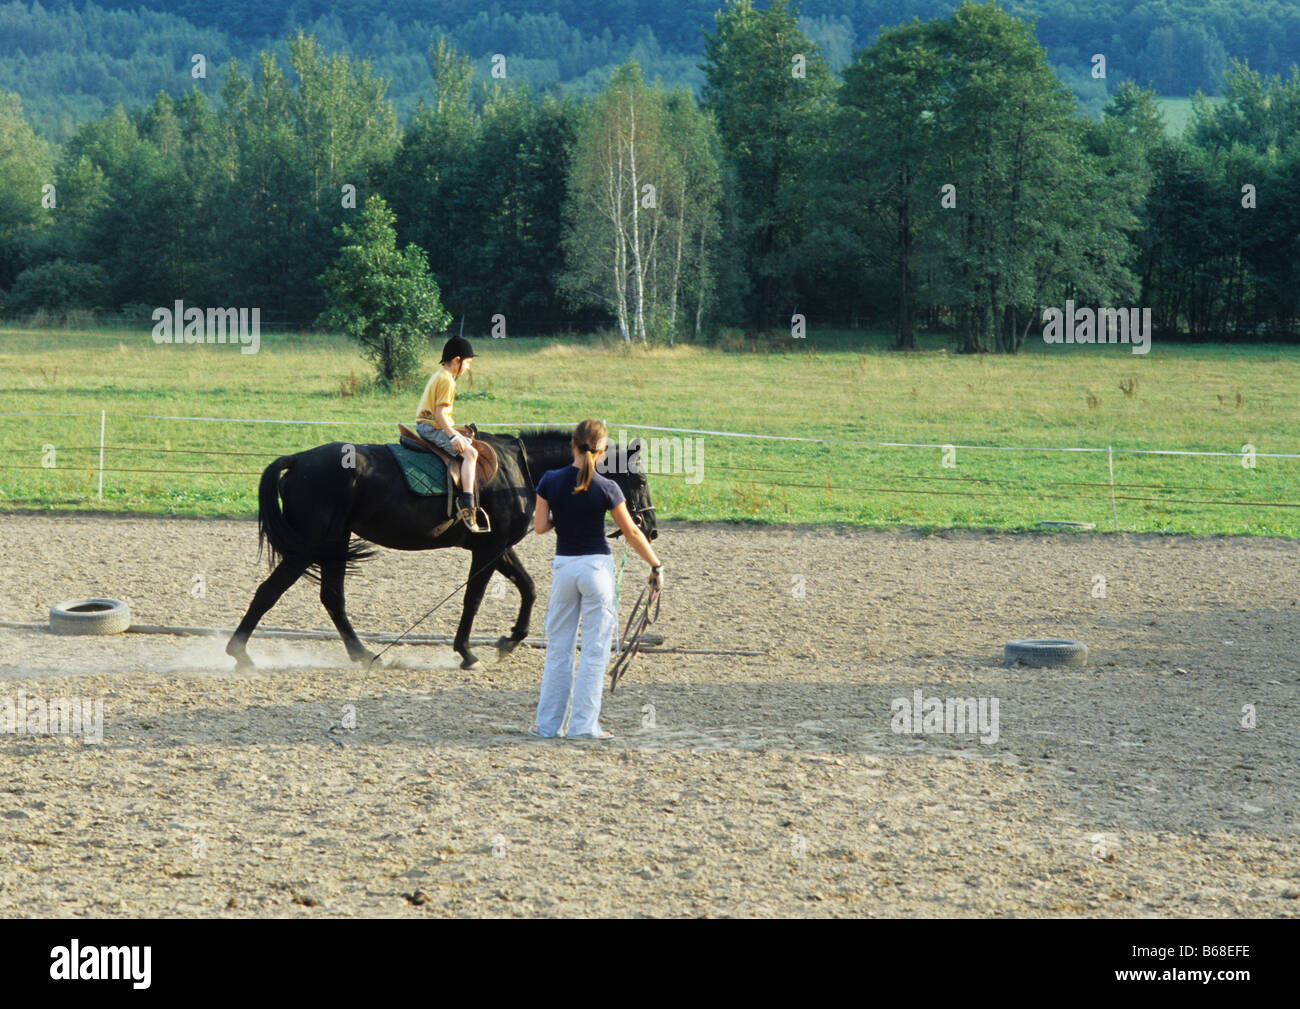 Poland Kapkazy village,  boy takes riding horse lesson Stock Photo